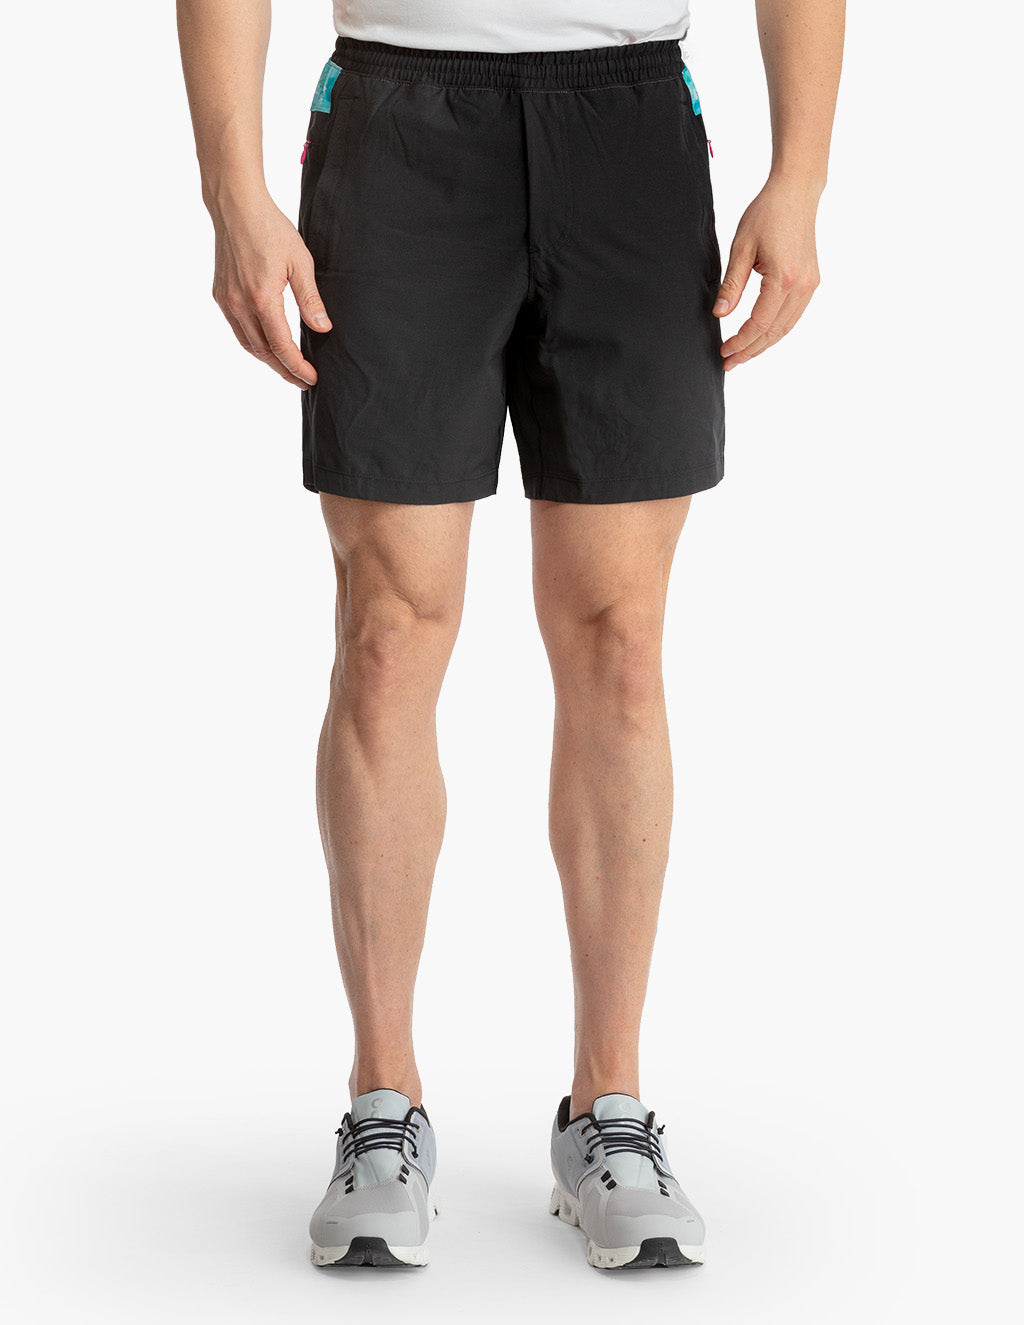 CRZ YOGA Men's Running Slim Fit Lightweight Joggers 29-Zipper Pockets